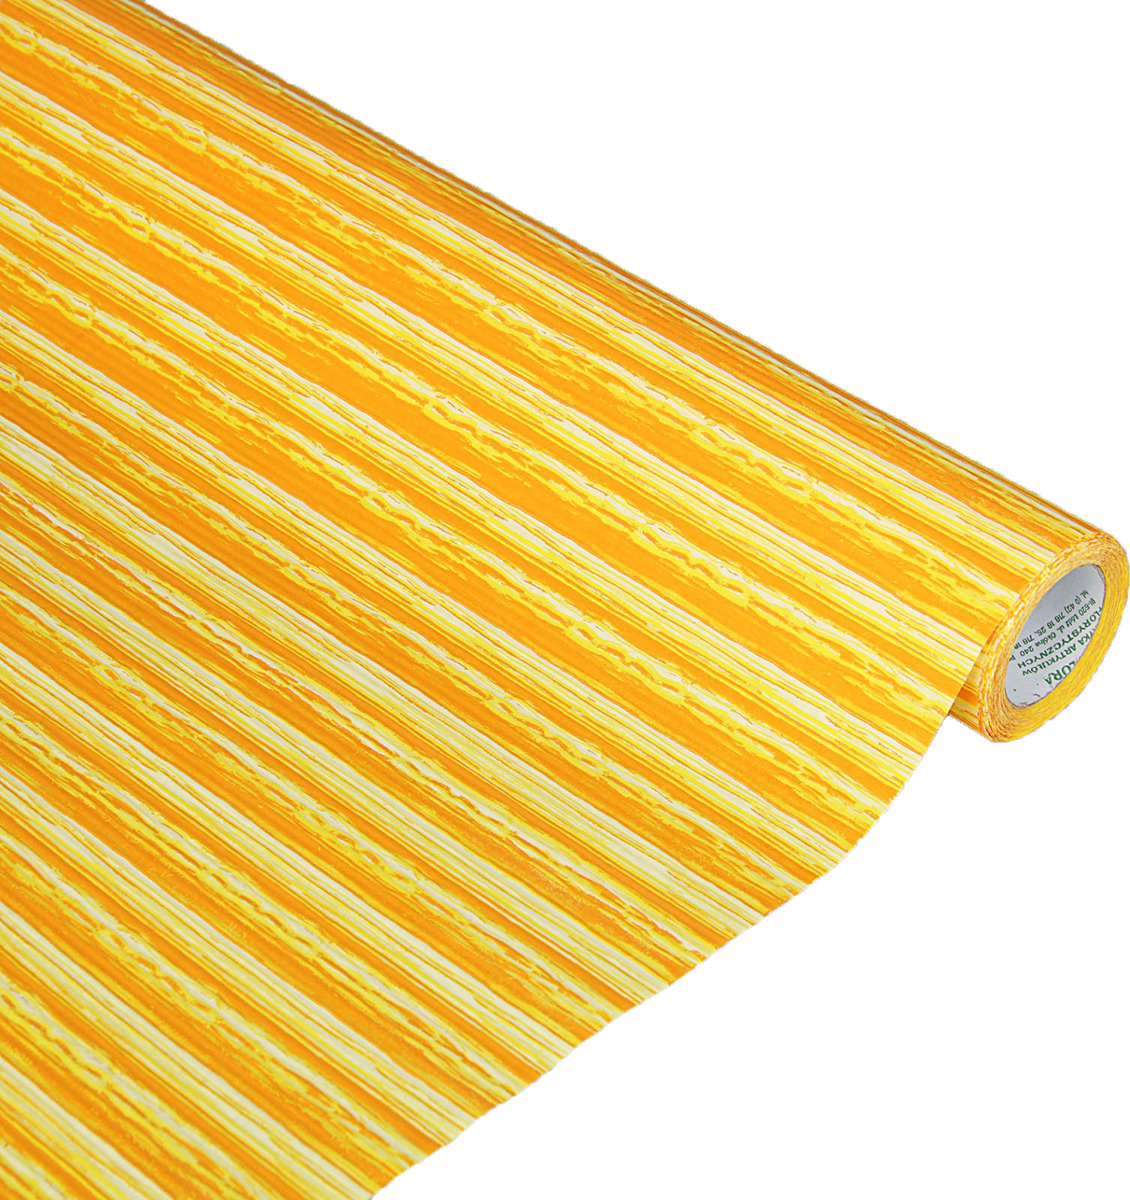 фото Бумага упаковочная Линии цвета, 2626809, желтый, оранжевый, 0,5 х 10 м